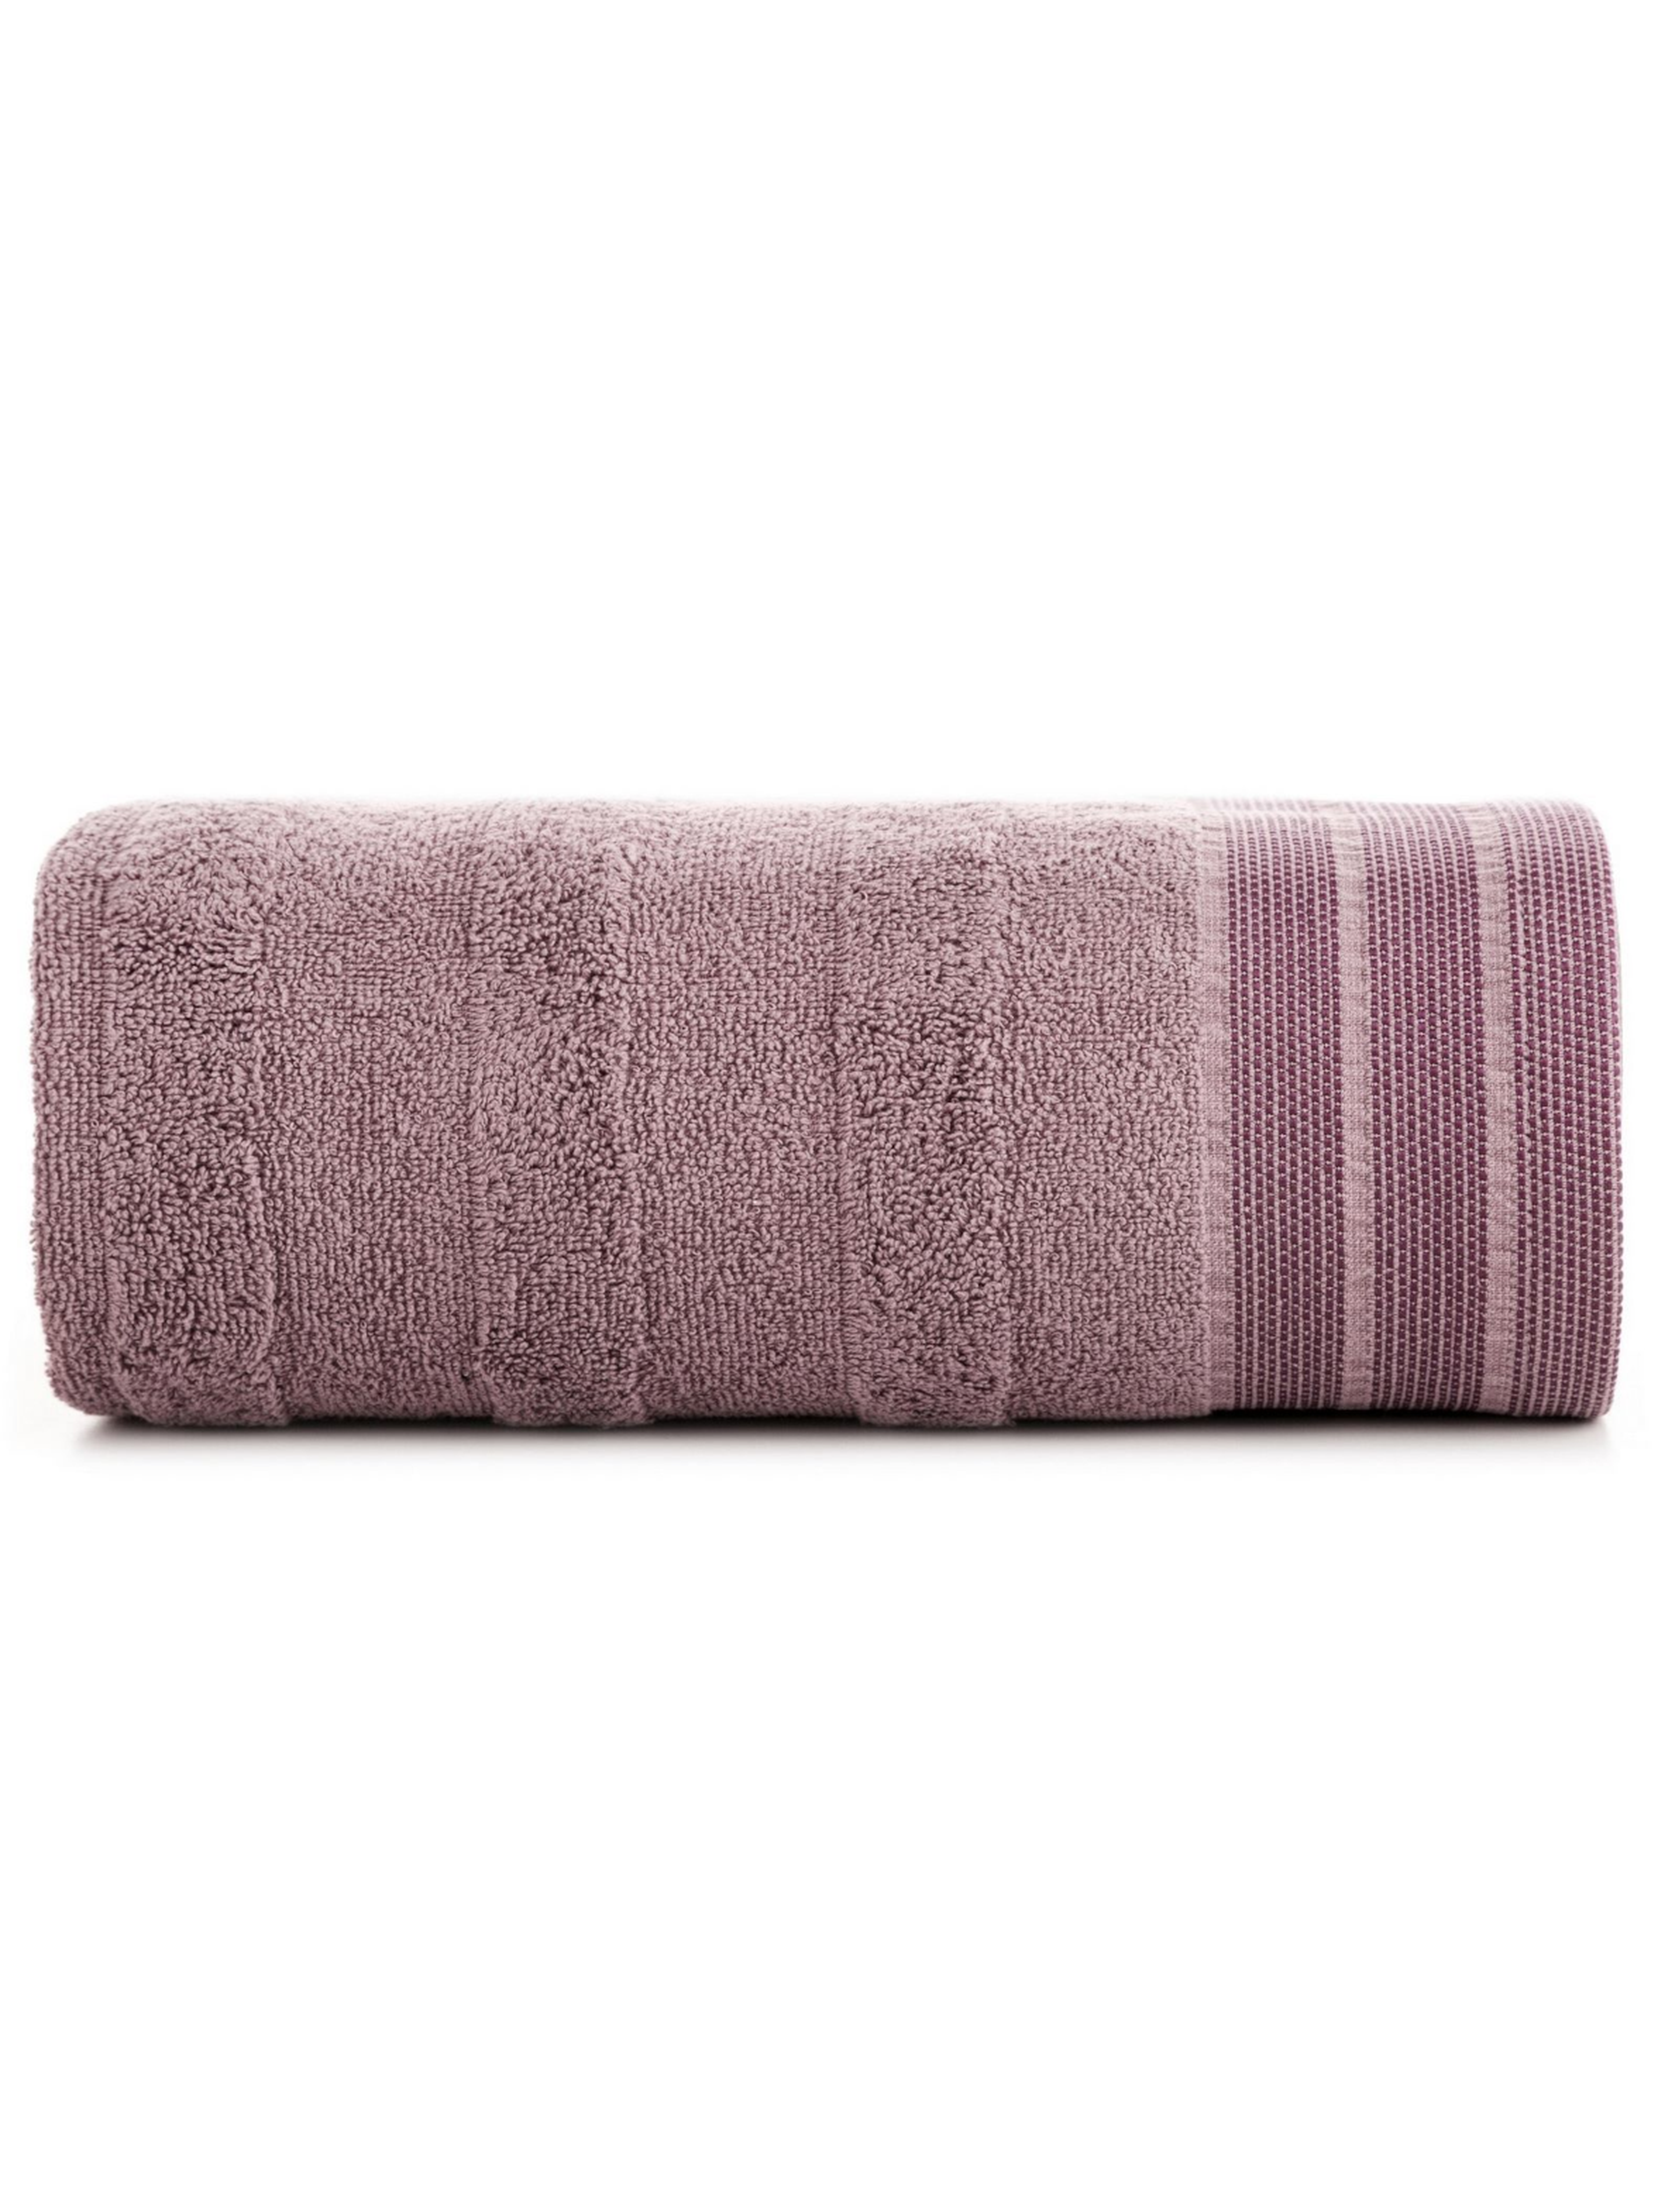 Liliowy ręcznik zdobiony pasami 50x90 cm